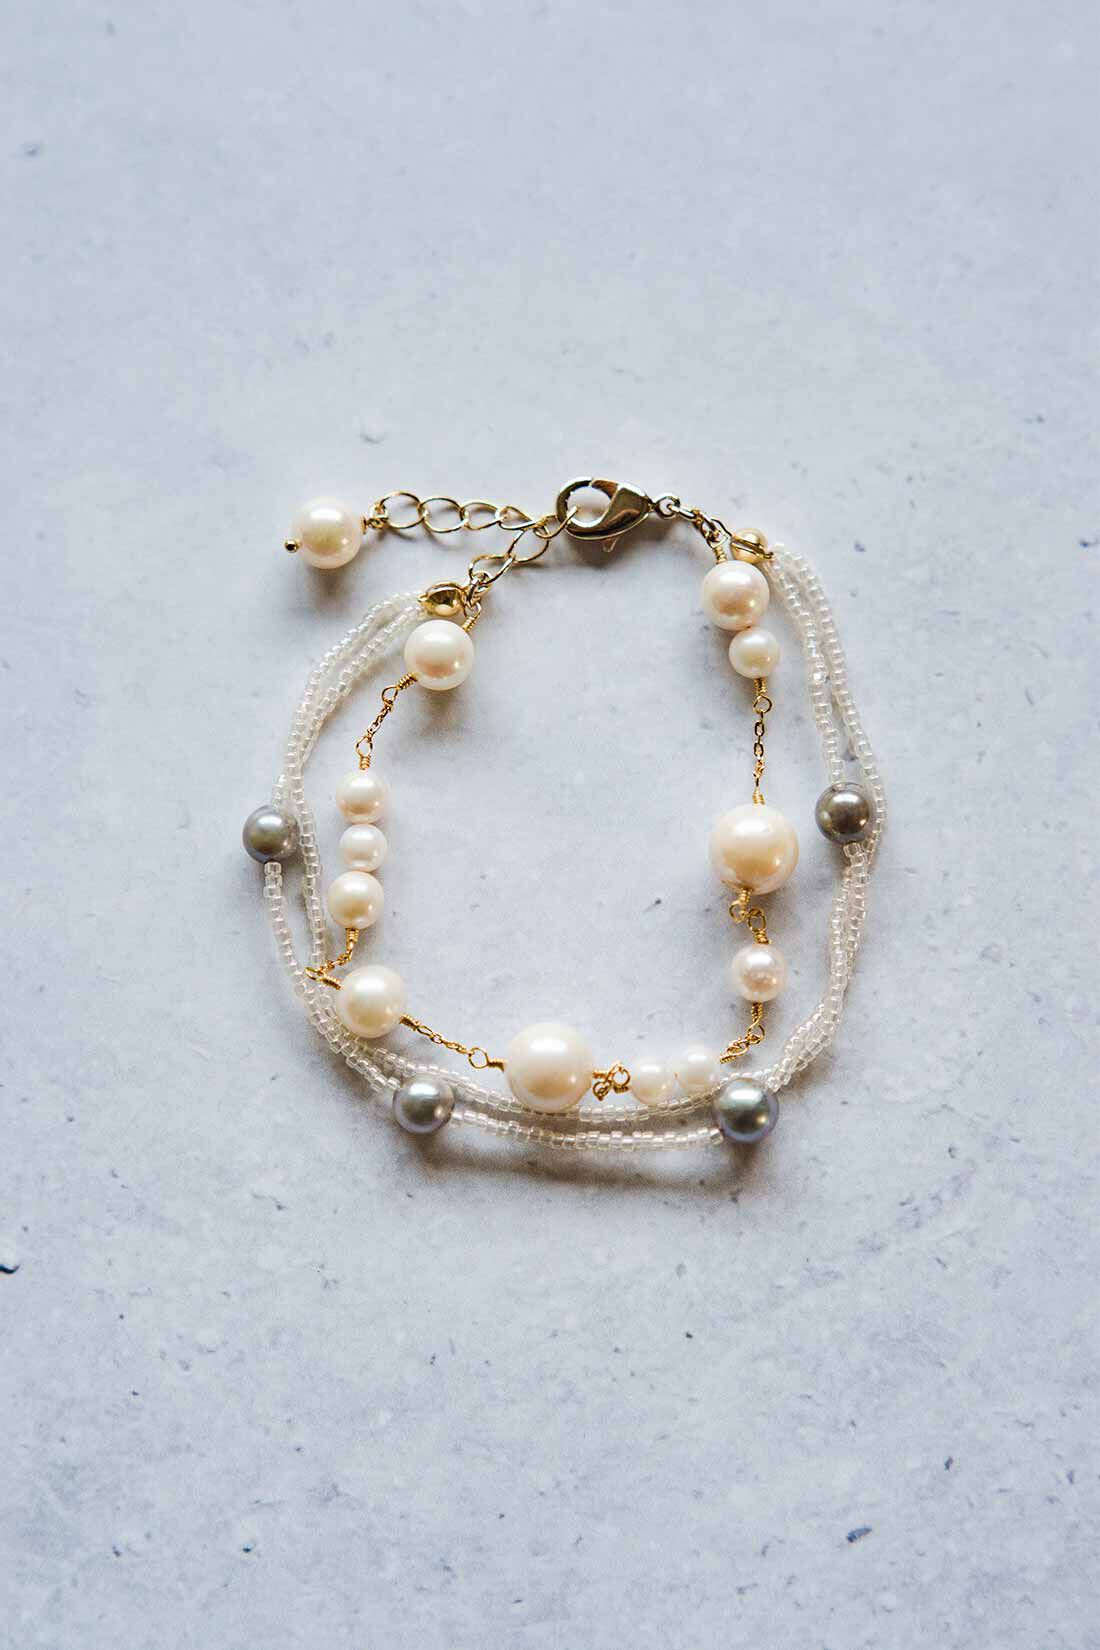 Couturier|自然の造形を愉しむ 日本の海で育った アコヤバロック真珠の会|4回分で豪華なジュエリーに仕立てれば、特別な日にふさわしい輝きに。アレンジ例です。アクセサリーパーツ・ビーズはセットされておりません。